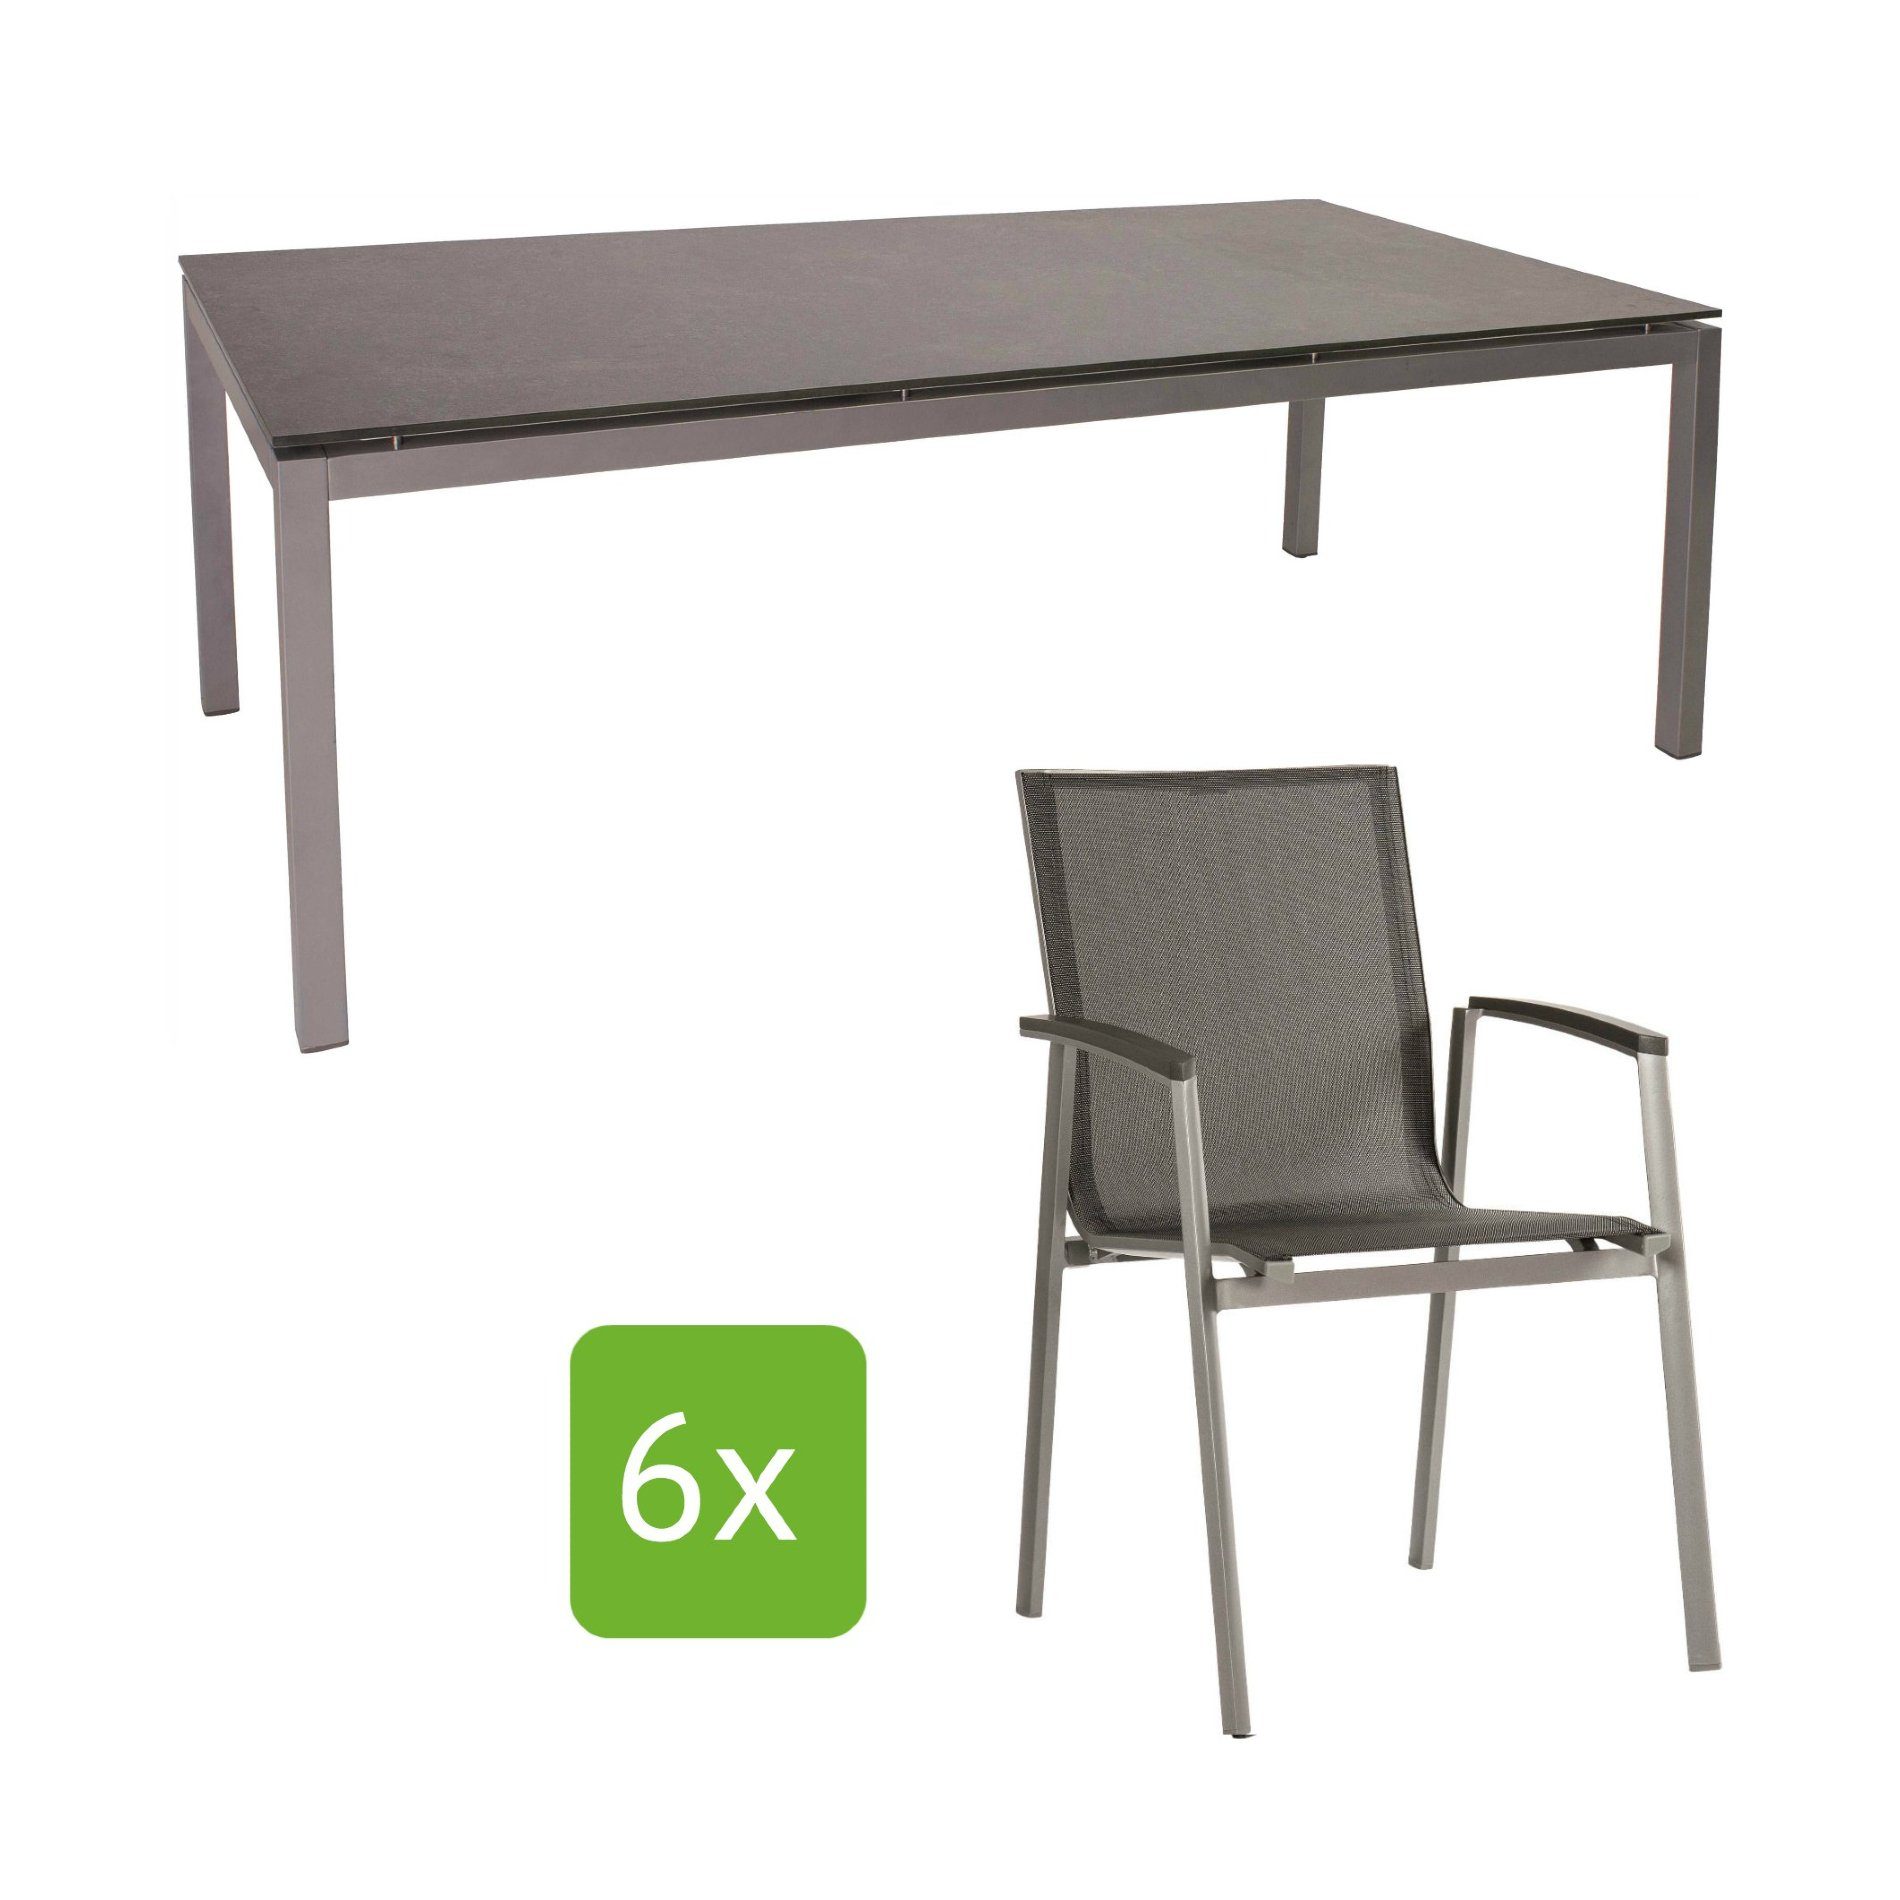 Stern Gartenmöbel-Set "New Top", Gestelle Aluminium graphit, Tischplatte Metallic grau, Sitz- und Rückenfläche Textilgewebe silbergrau